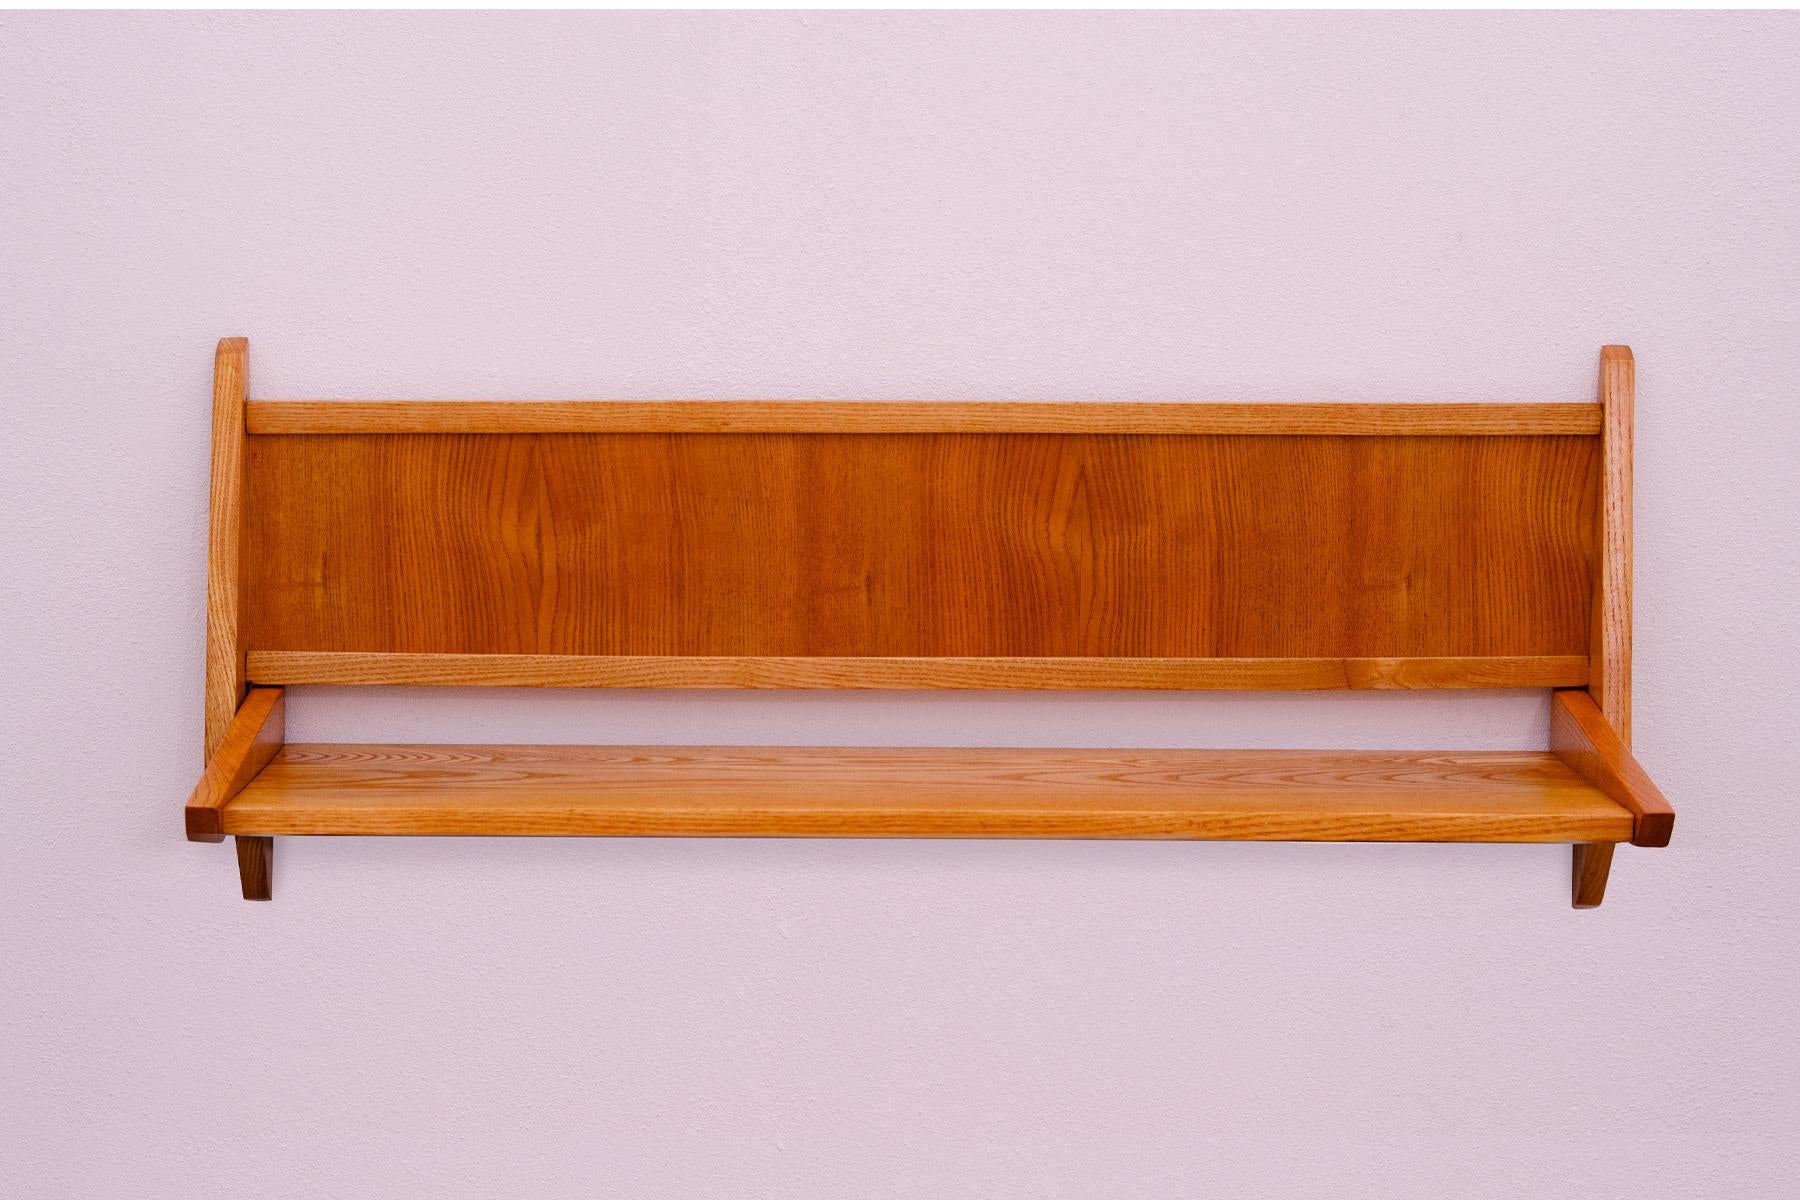 Holzregal aus der Mitte des Jahrhunderts, hergestellt von der Firma ULUV in der ehemaligen Tschechoslowakei in den 1960er Jahren.
Es ist aus Buchenholz gefertigt.
In sehr gutem Vintage-Zustand.

 

Höhe: 30 cm

Breite: 74 cm

Tiefe: 22 cm